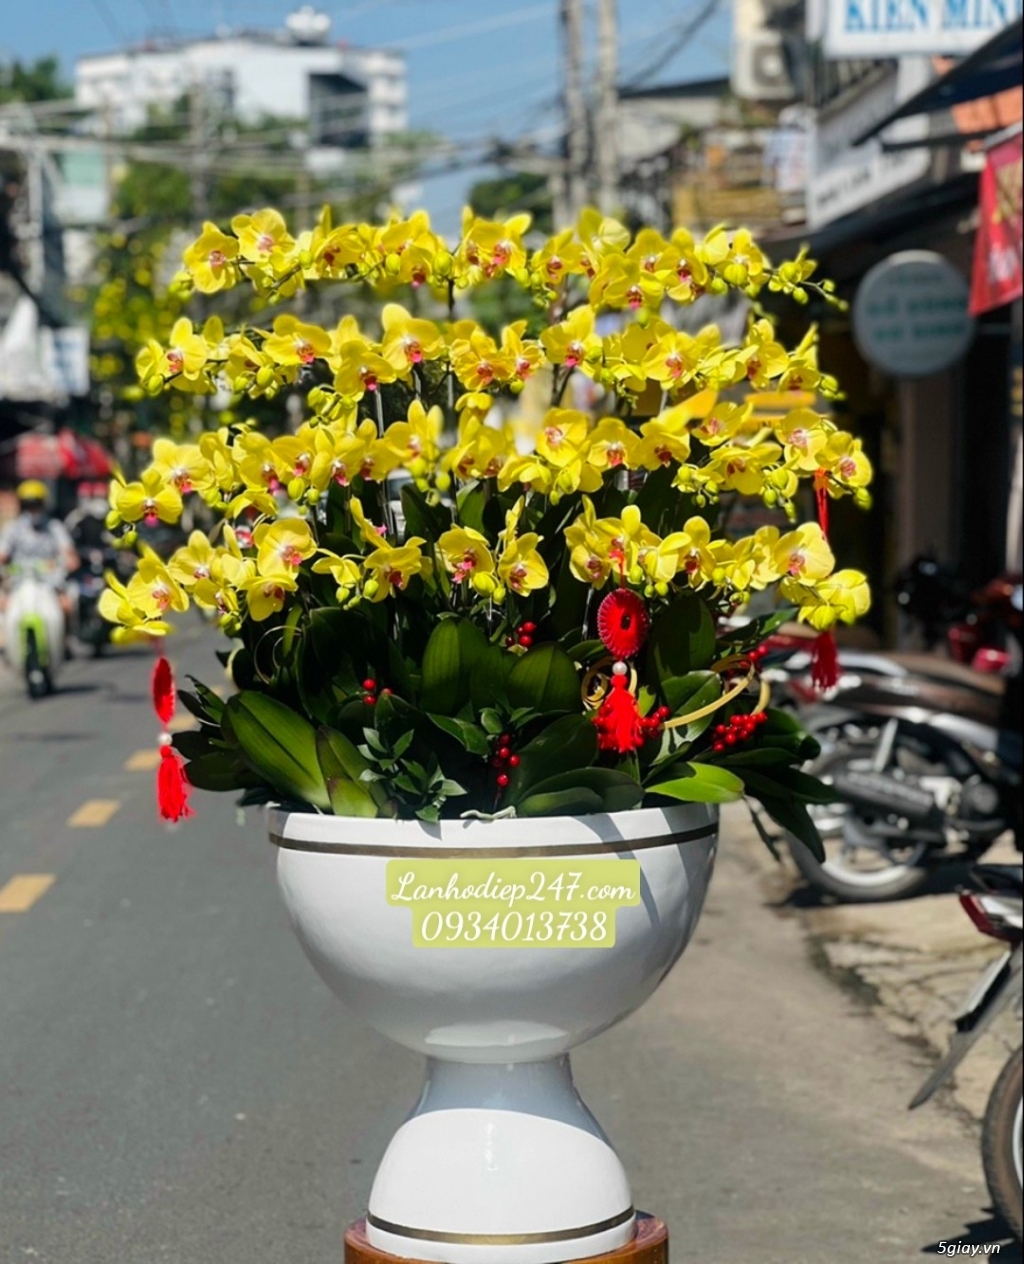 Shop hoa bán lan hồ điệp đẹp uy tín hút khách nhất tphcm - Hoatuoi247 - 20